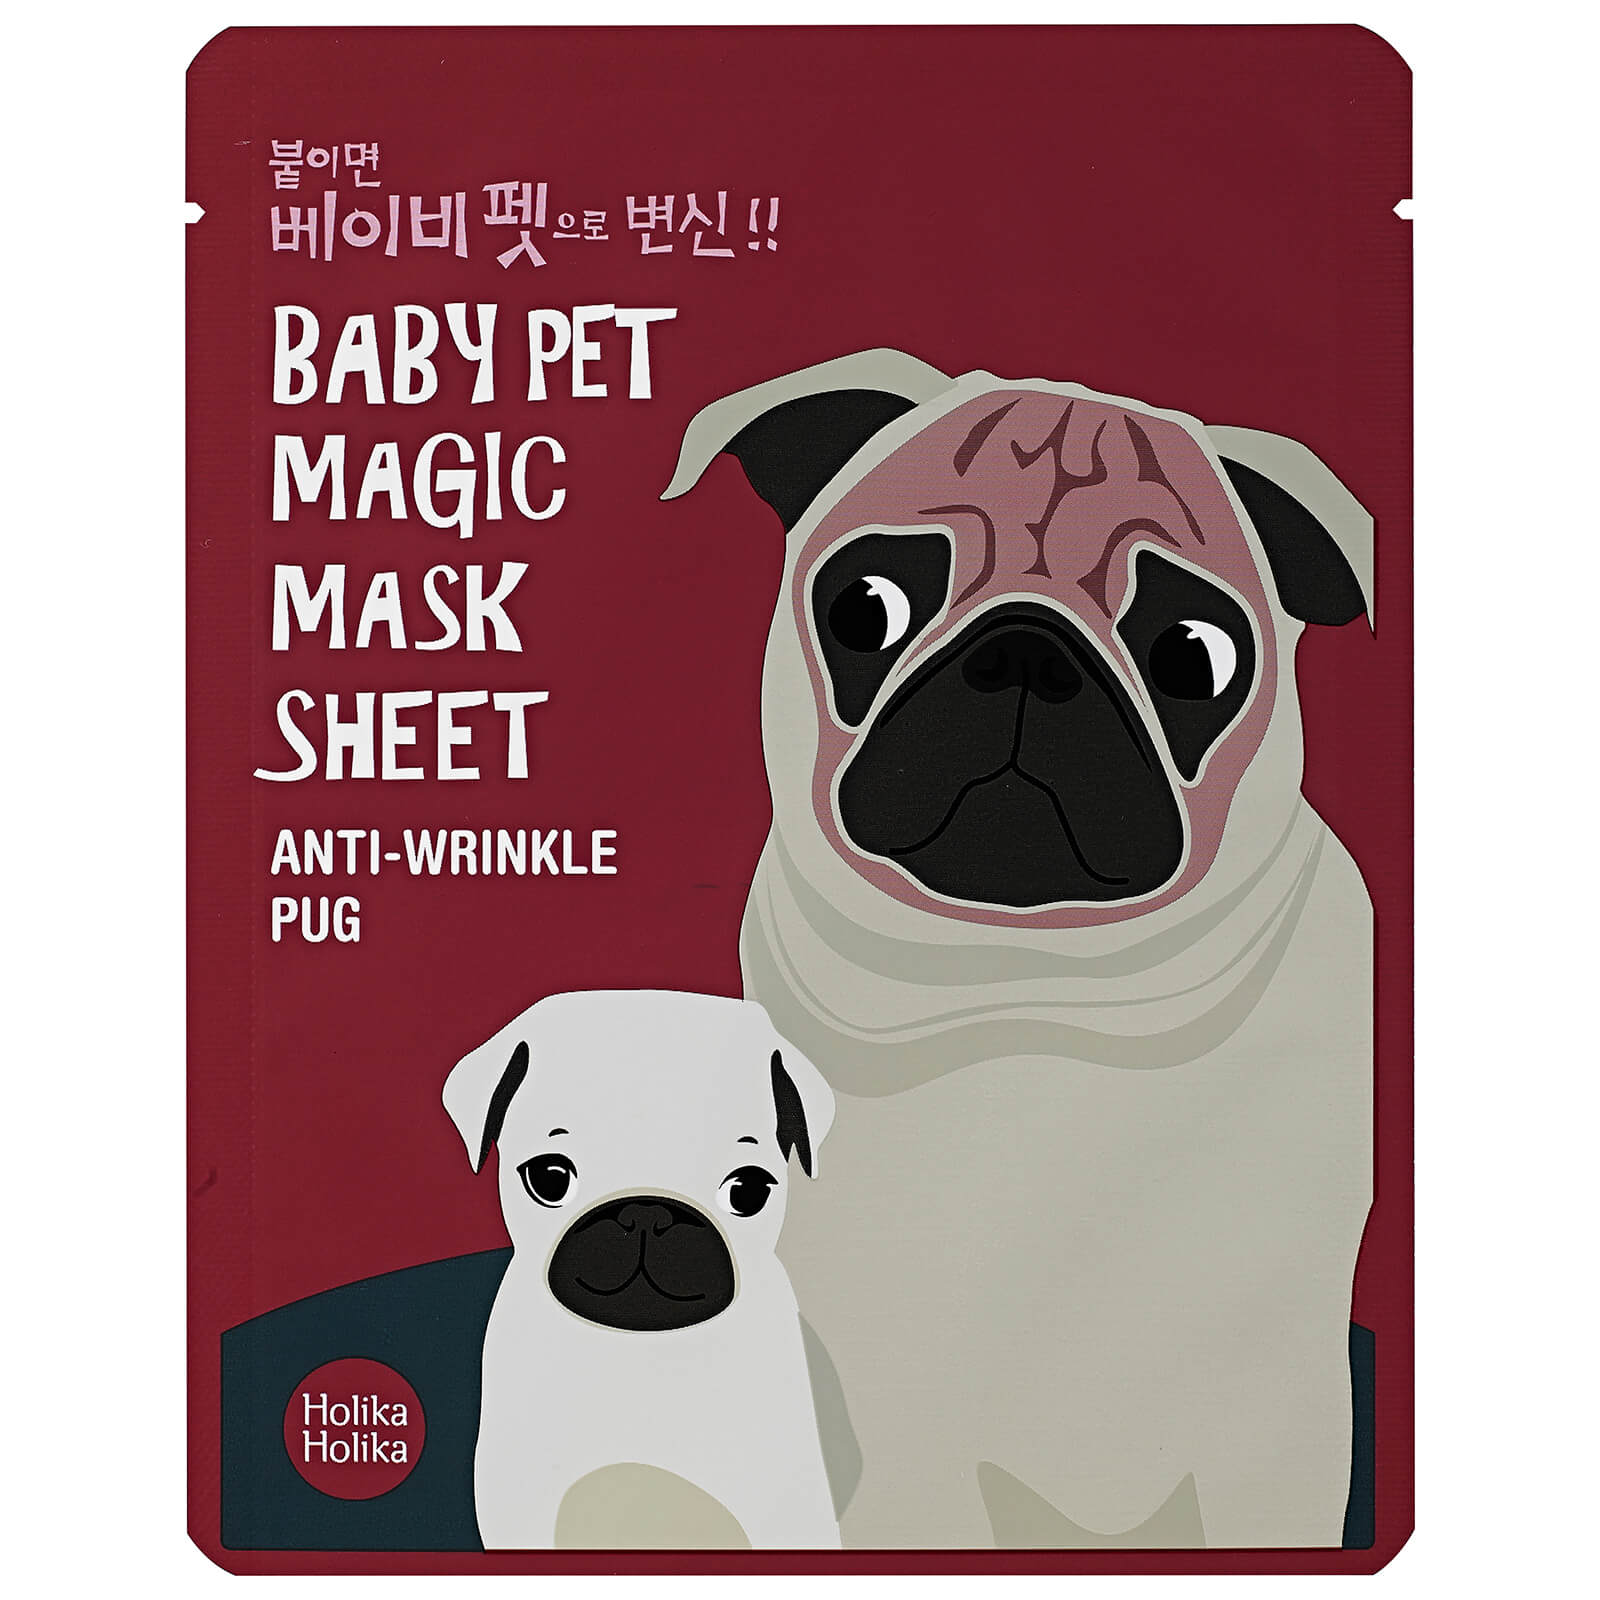 Фото - Маска для обличчя Holika Holika Baby Pet Magic Mask Sheet 120ml  - Pug 2001 (Various Options)